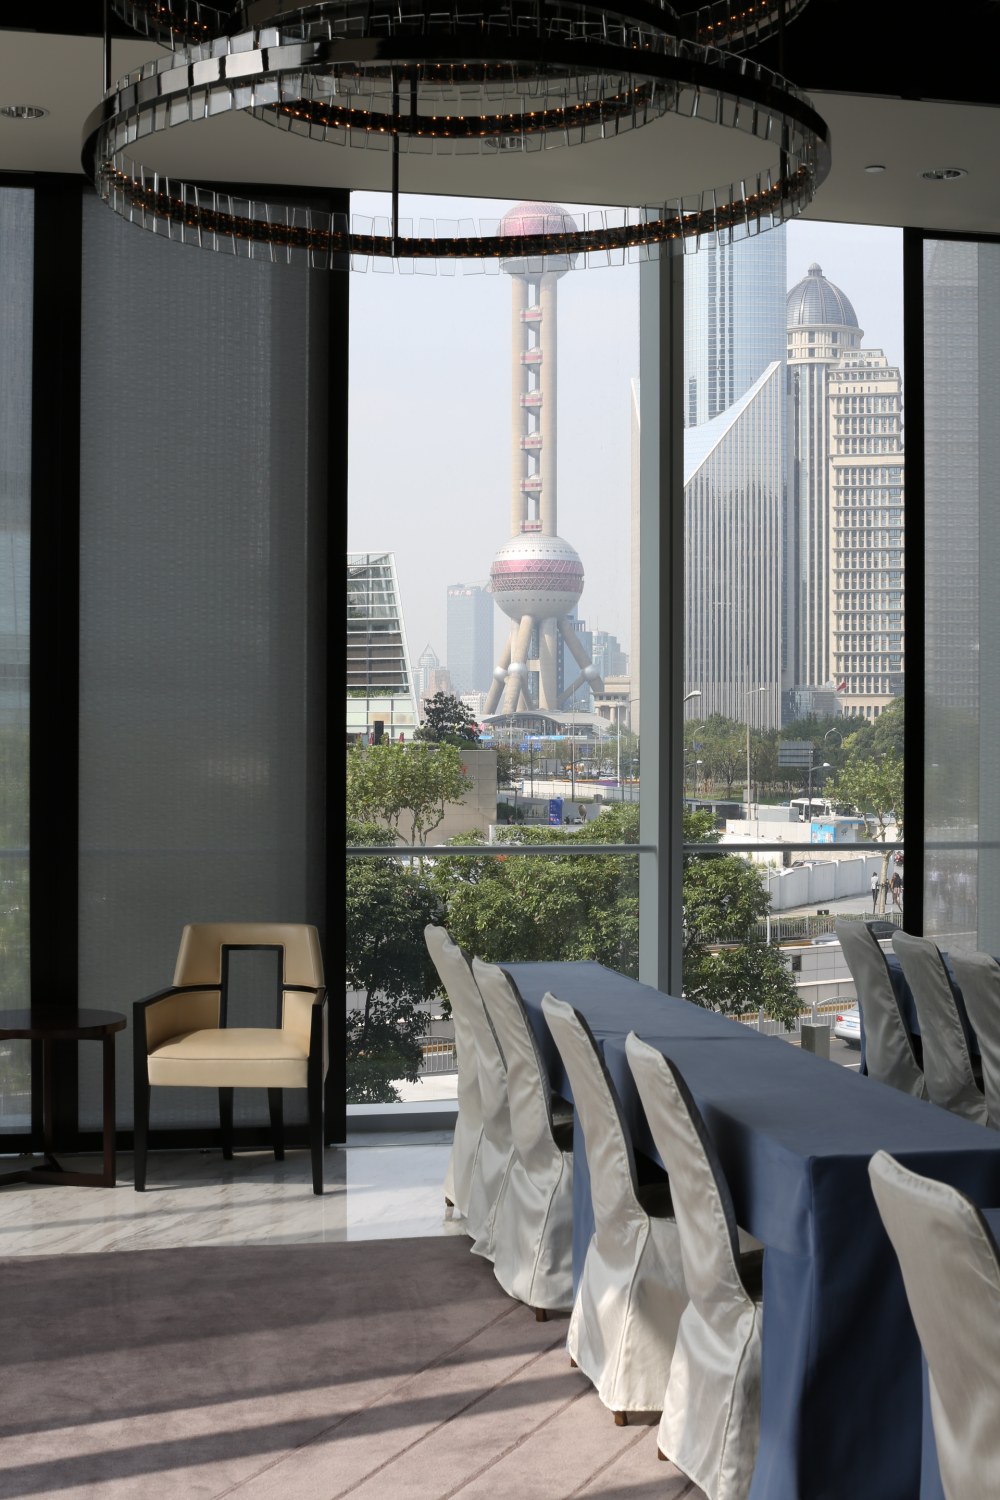 上海浦东四季酒店( Four Seasons Hotel Shanghai Pudong)_DI6A2512.JPG